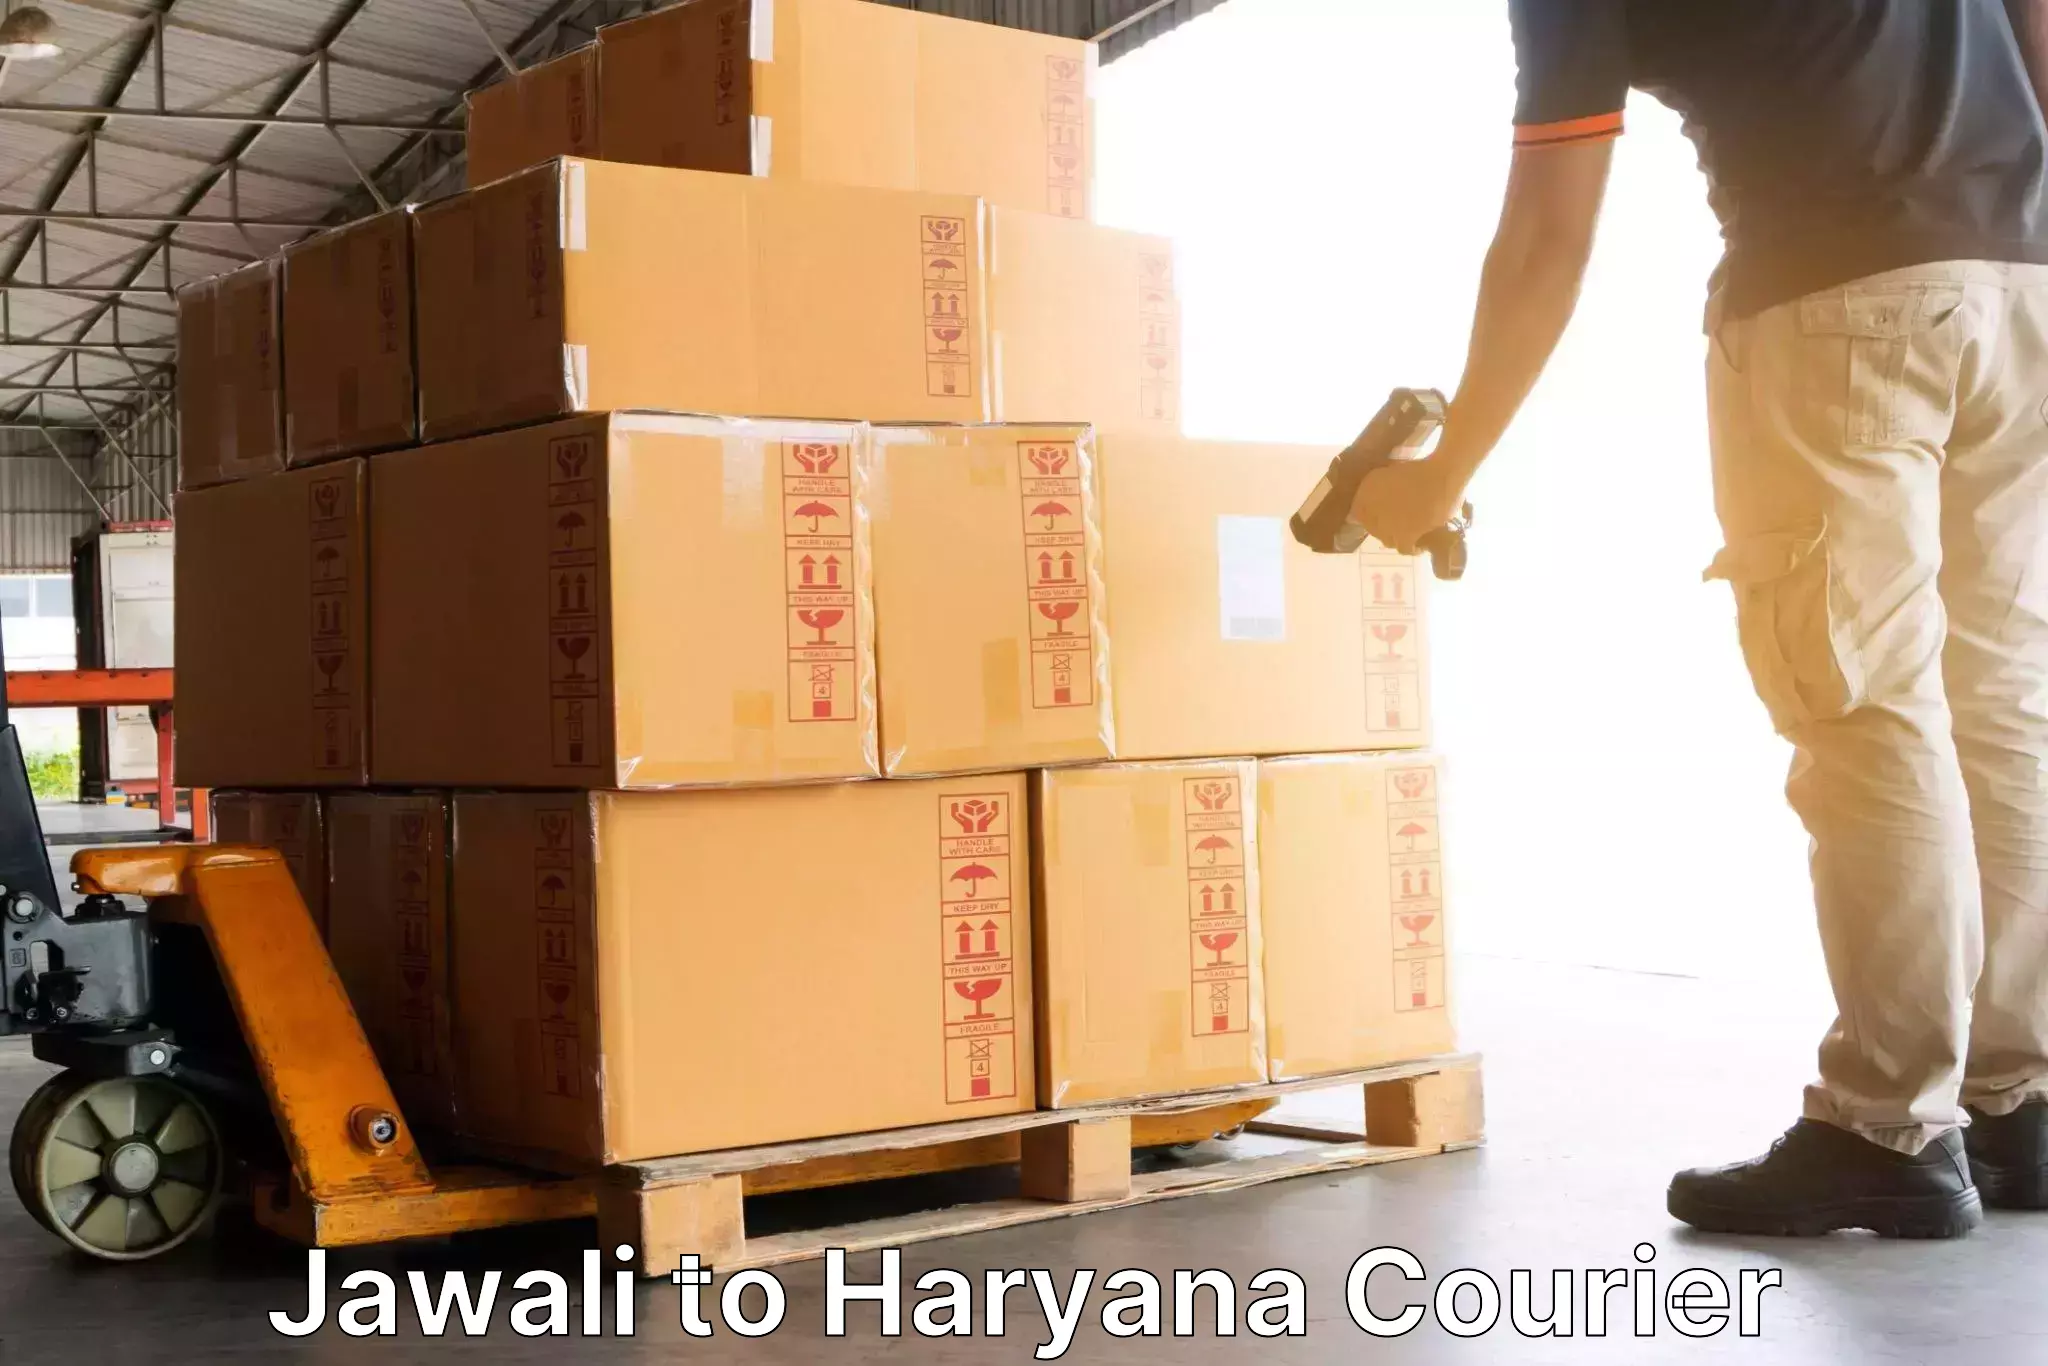 High-capacity parcel service Jawali to Julana